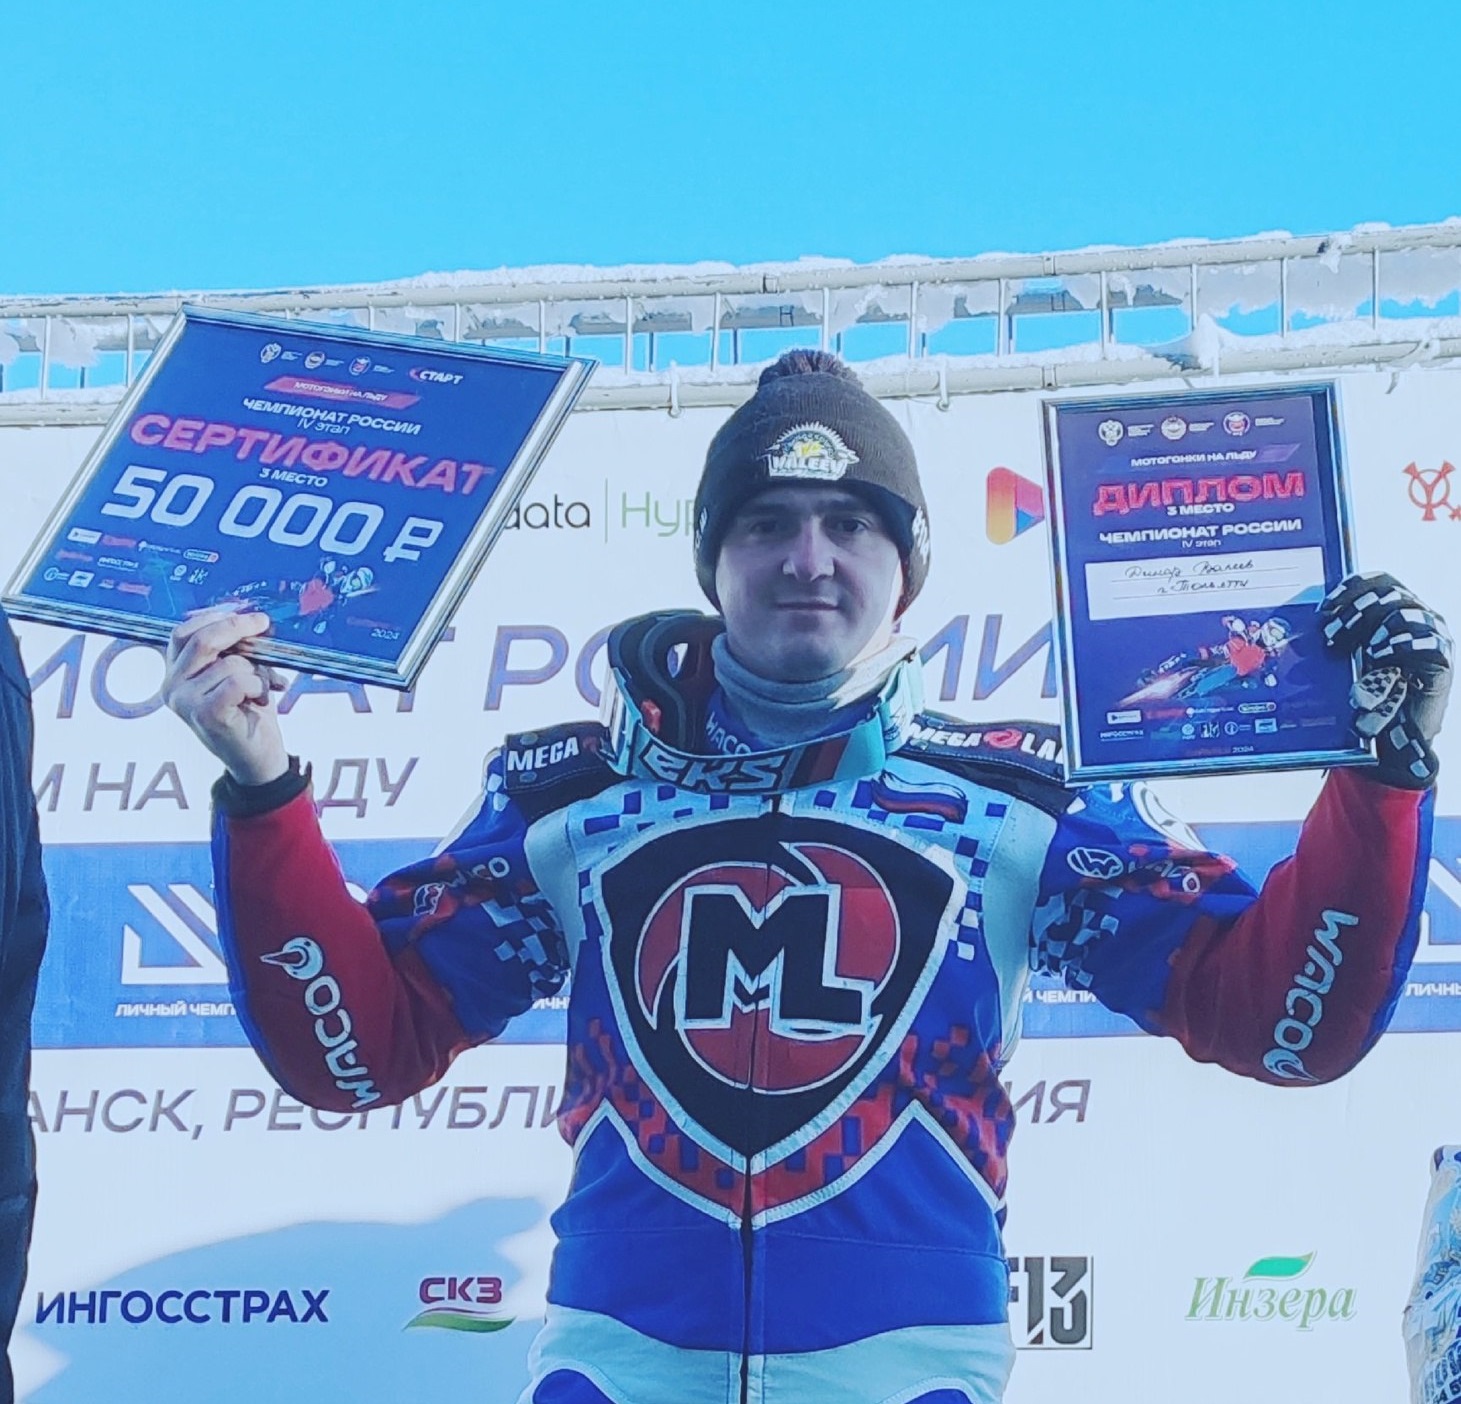 Тольяттинец Динар Валеев возглавляет турнирную таблицу личного чемпионата России по мотогонкам на льду